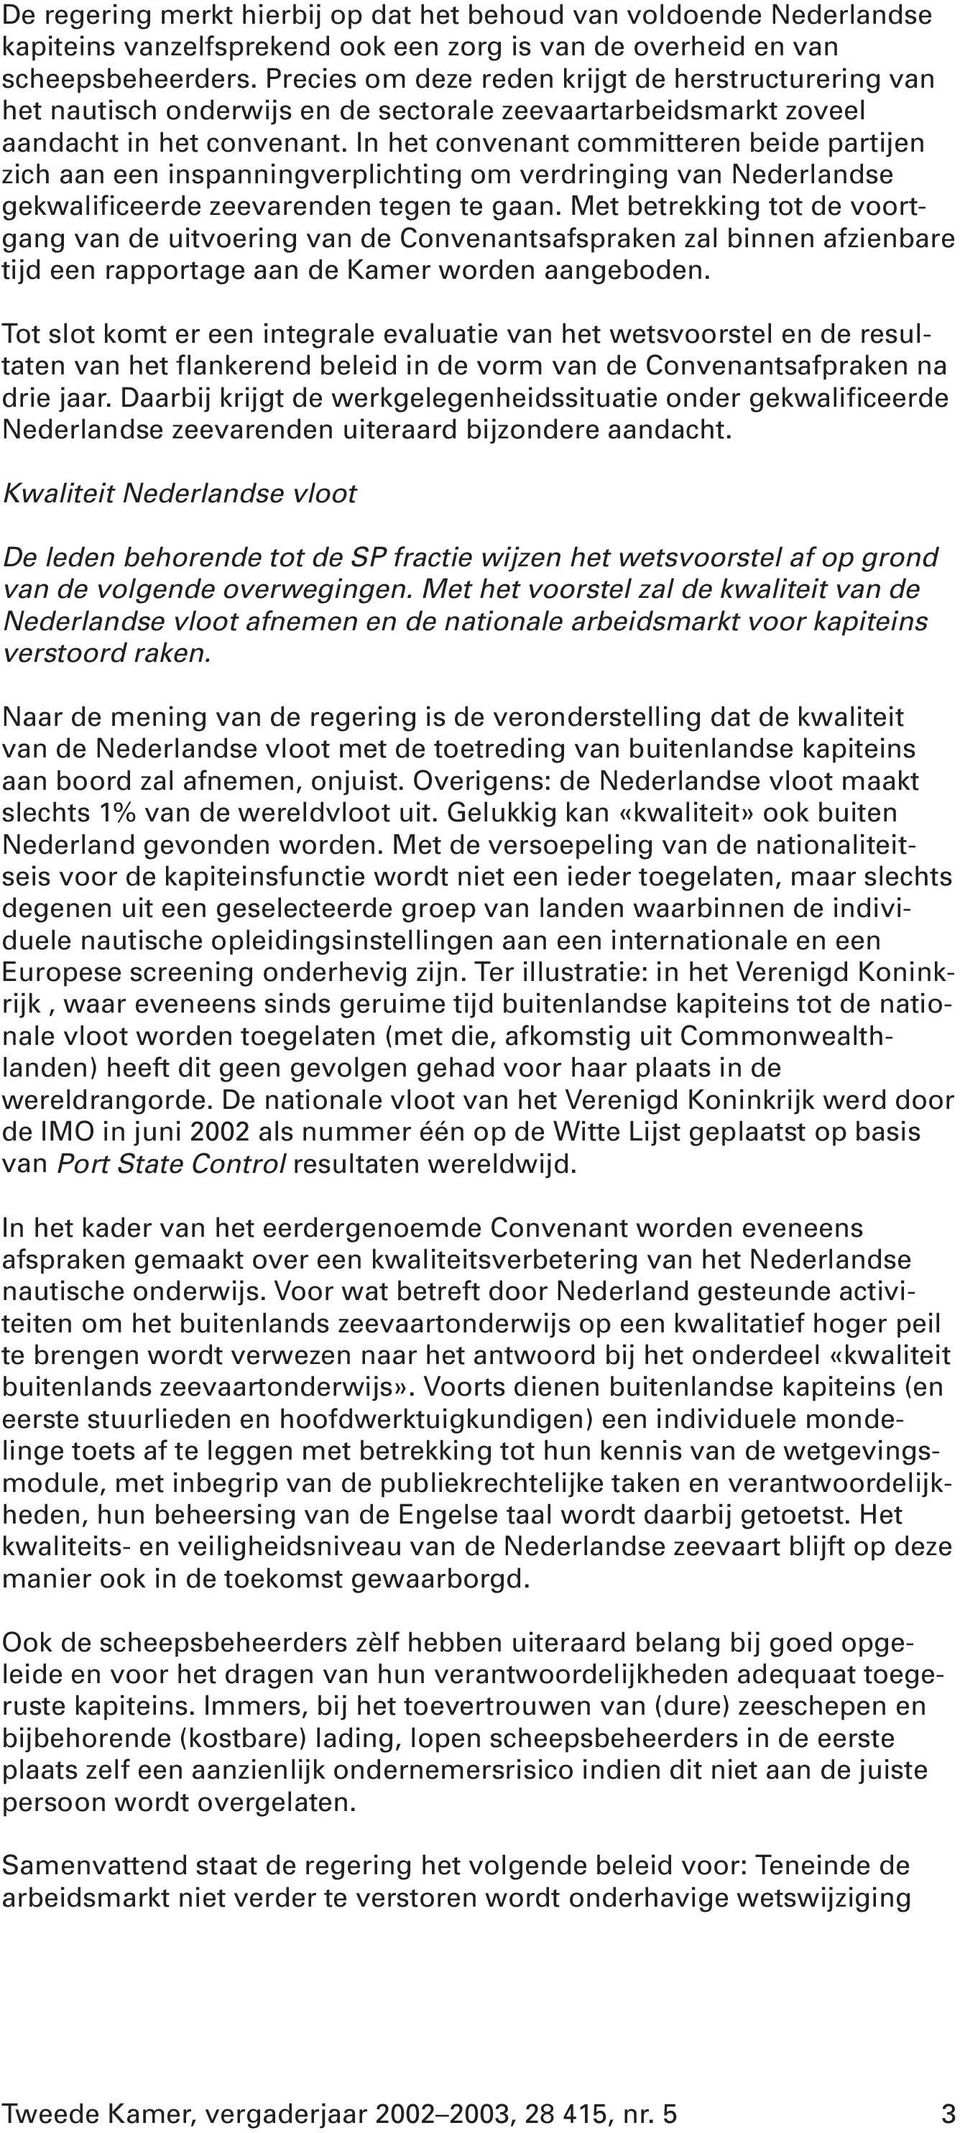 In het convenant committeren beide partijen zich aan een inspanningverplichting om verdringing van Nederlandse gekwalificeerde zeevarenden tegen te gaan.